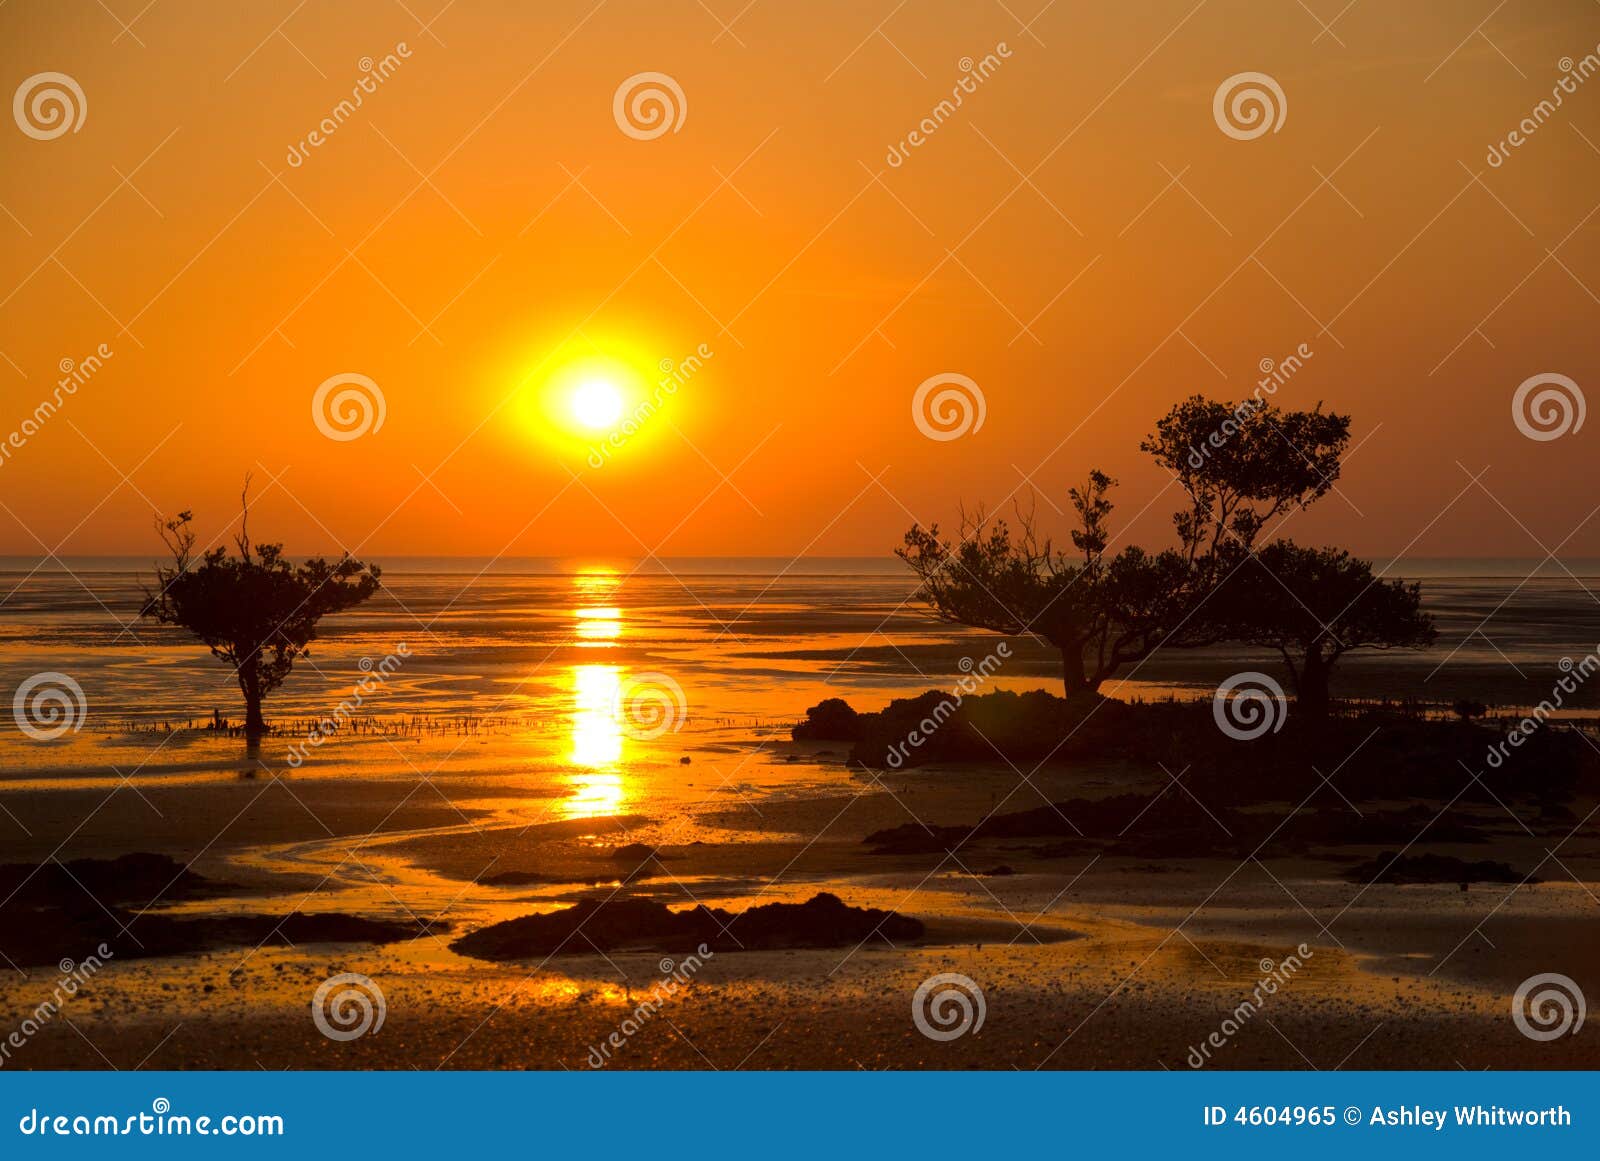 Sunset stock image. Image of head, west, trees, orange - 4604965